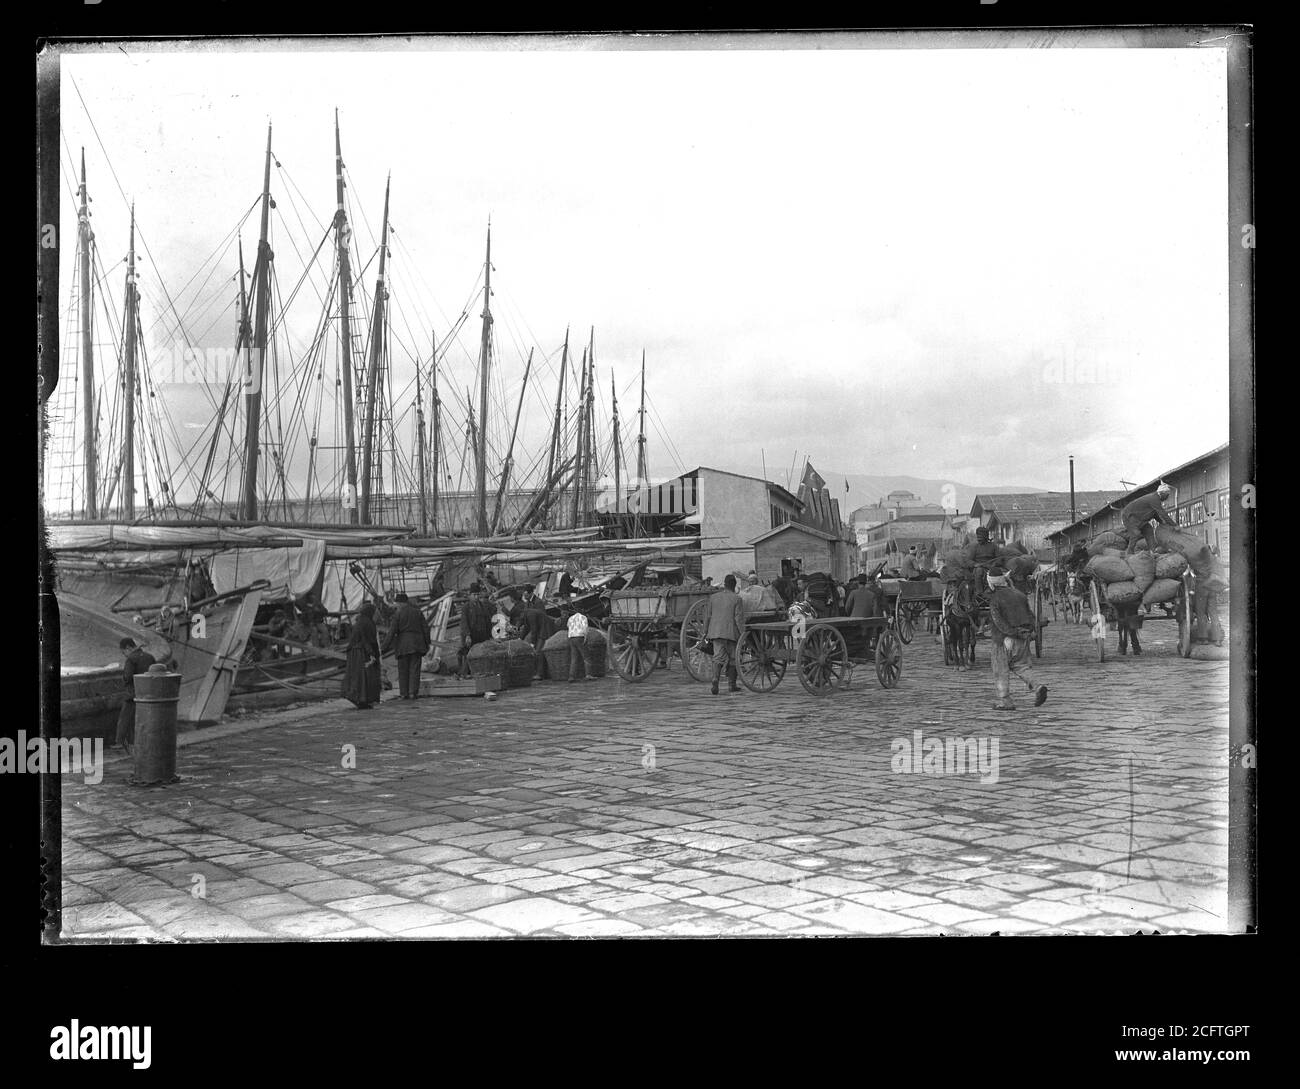 Smyrna Izmir Port transport de marchandises. Photographie sur plaque de verre sec de la collection Herry W. Schaefer, vers 1910. Banque D'Images